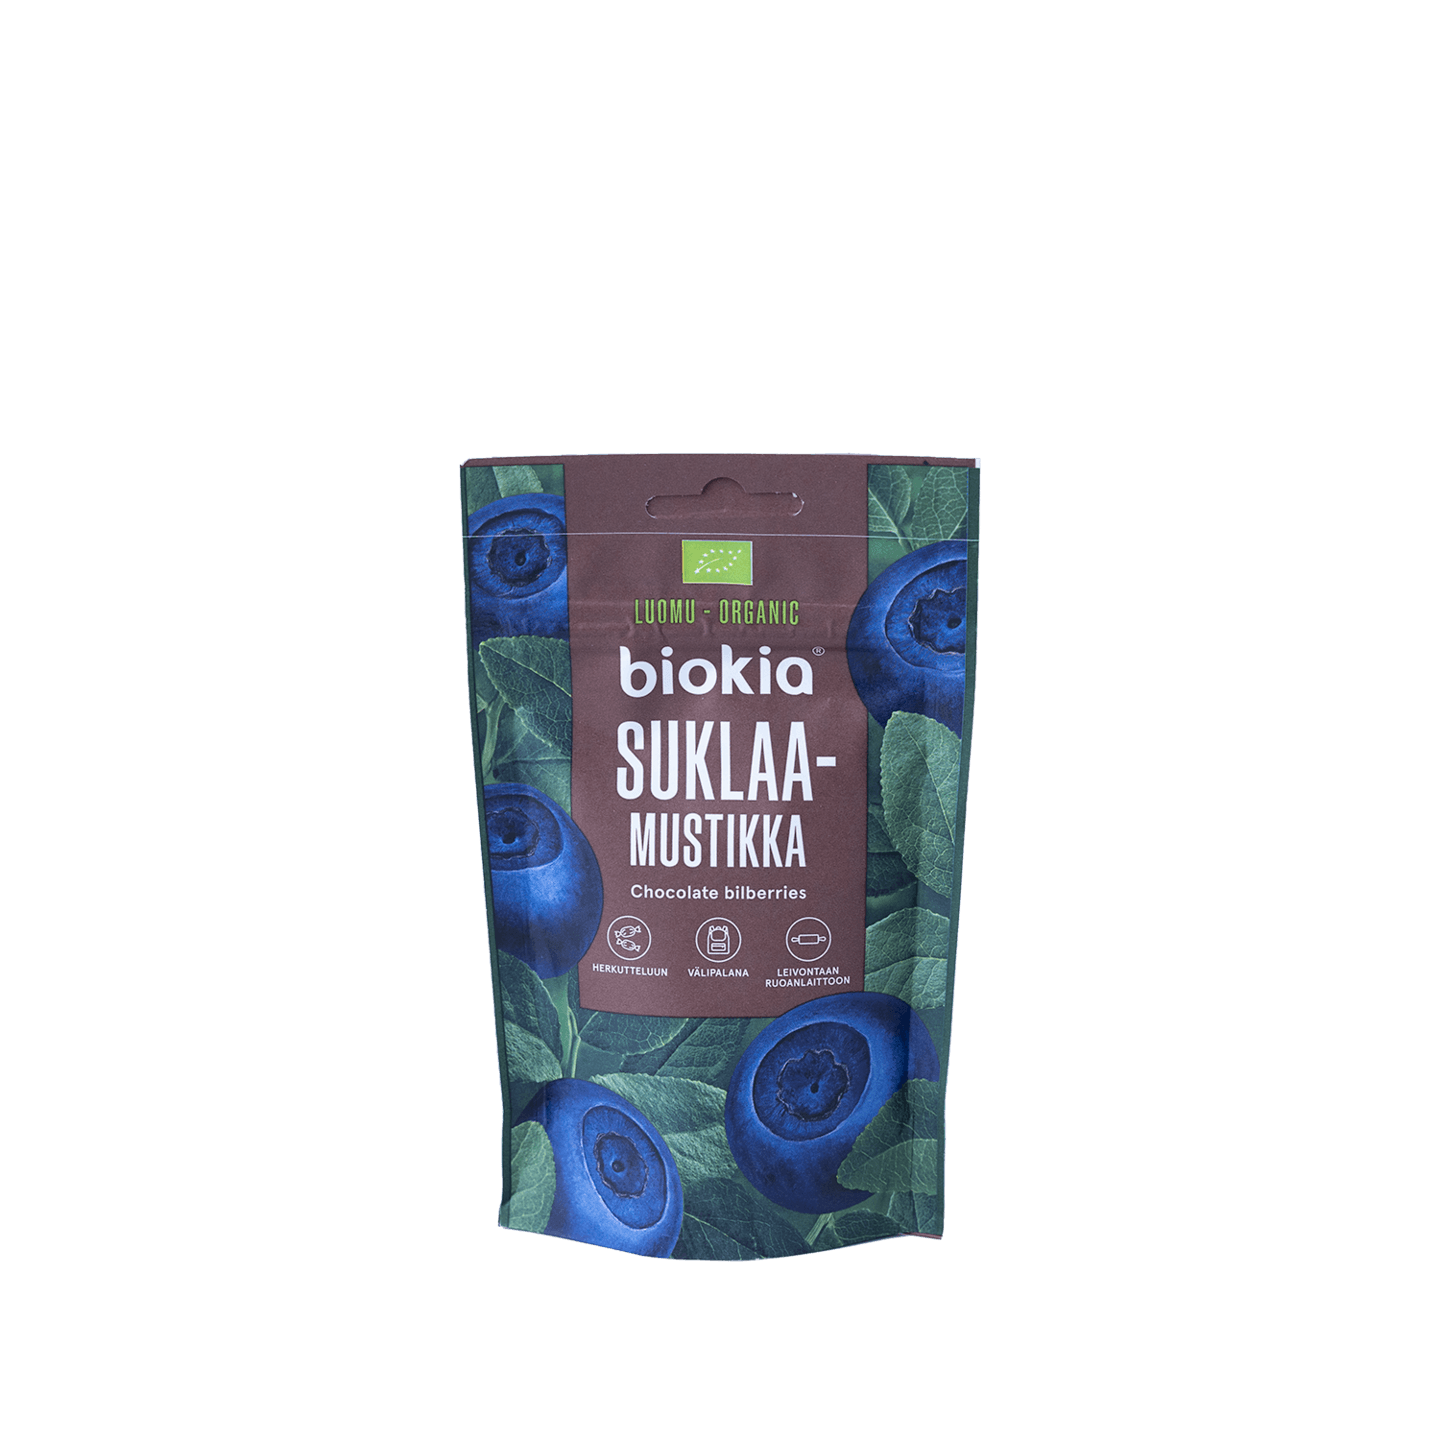 Biokia Organic Chocolate Bilberries